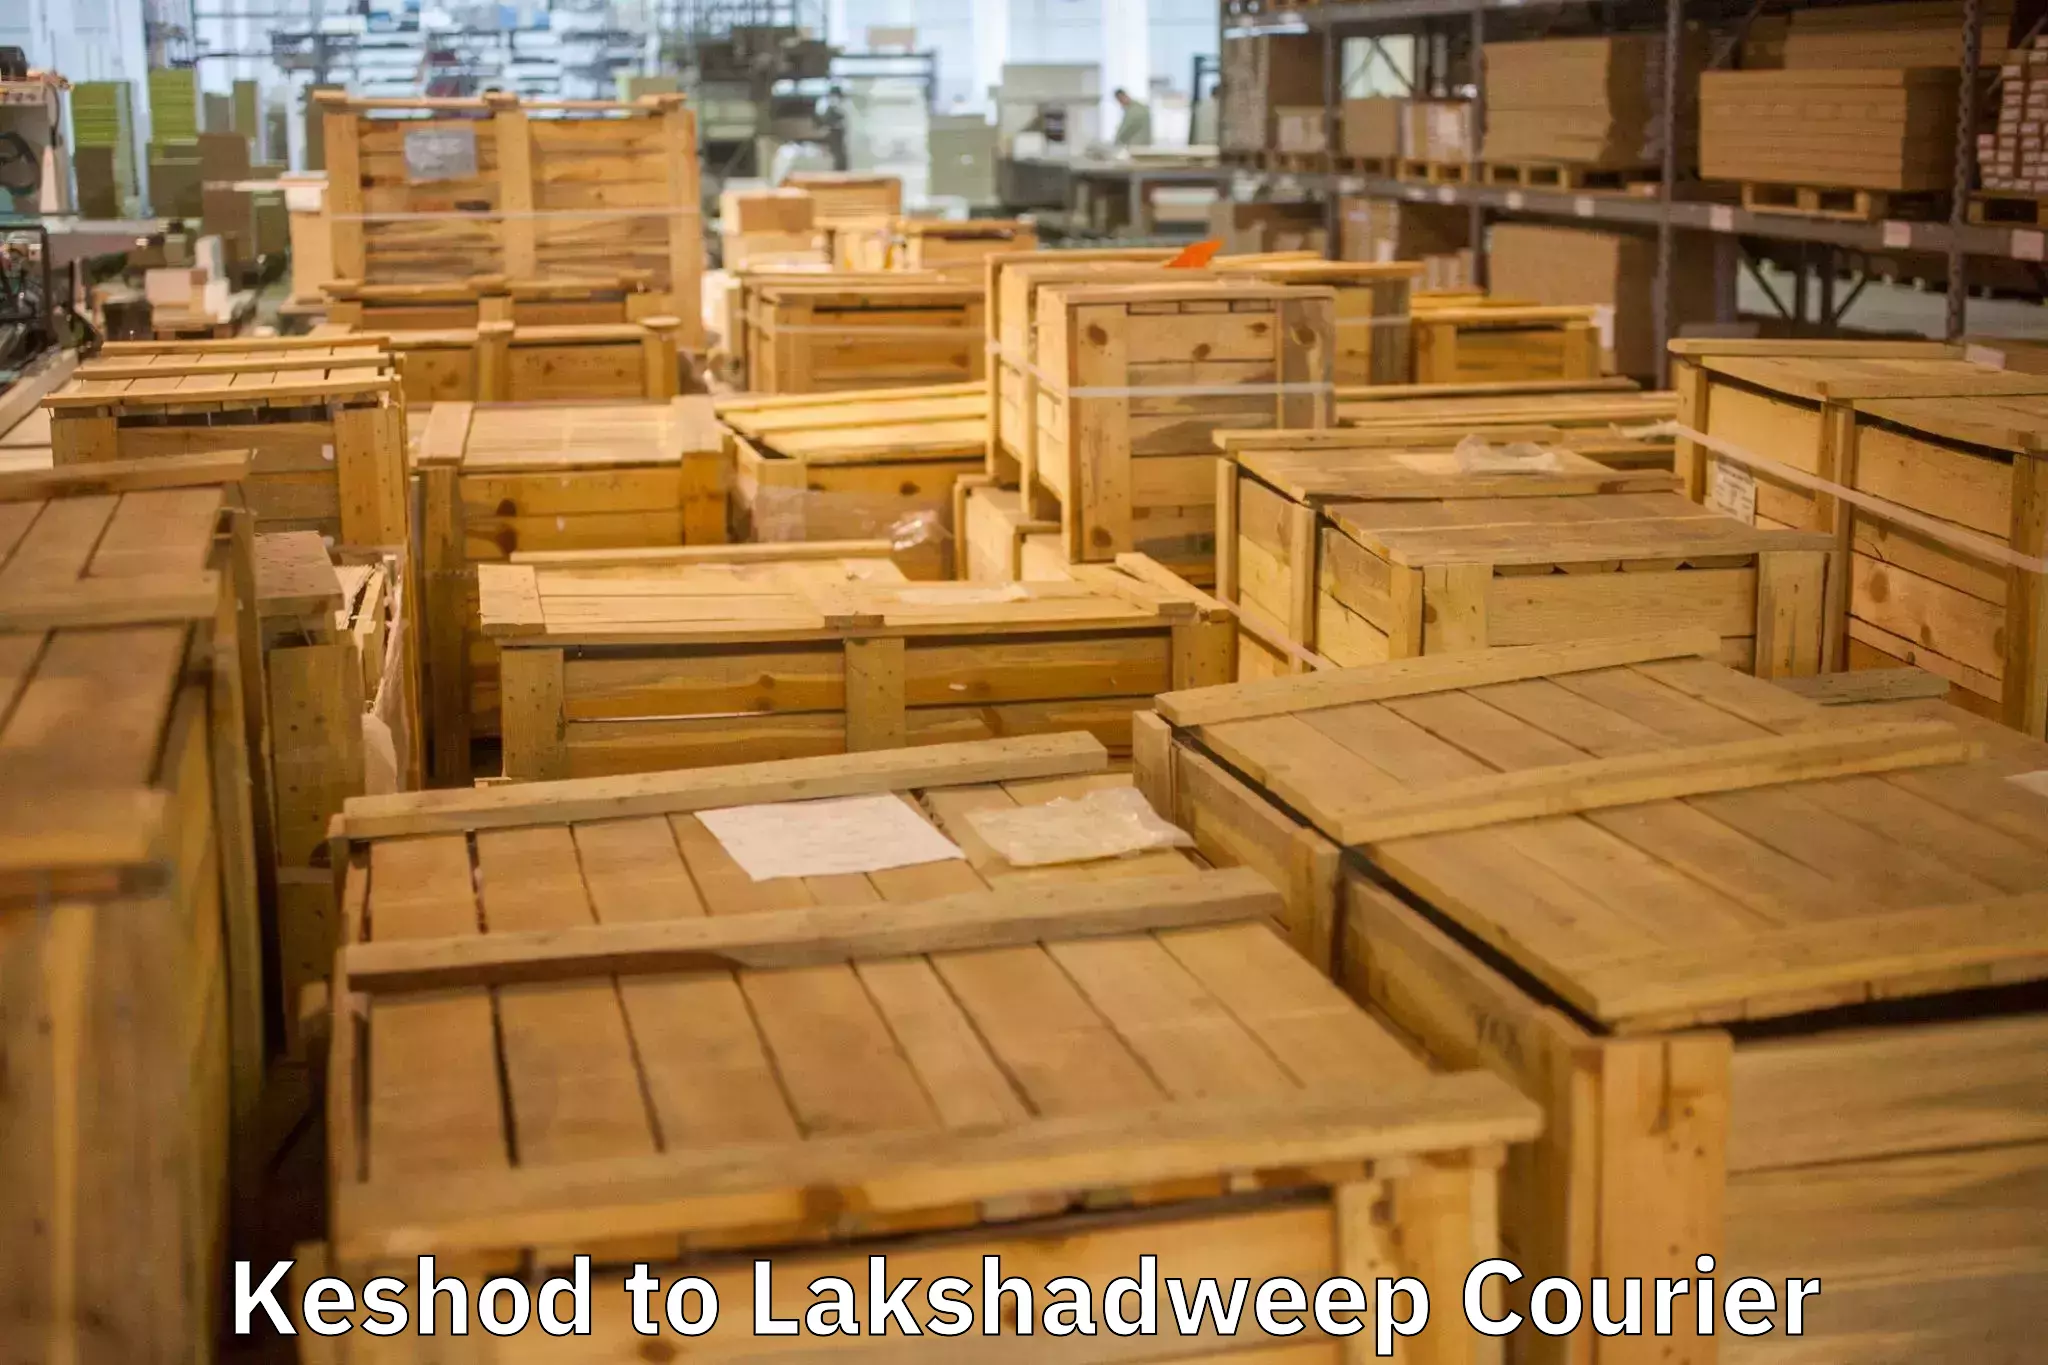 Customized household moving Keshod to Lakshadweep